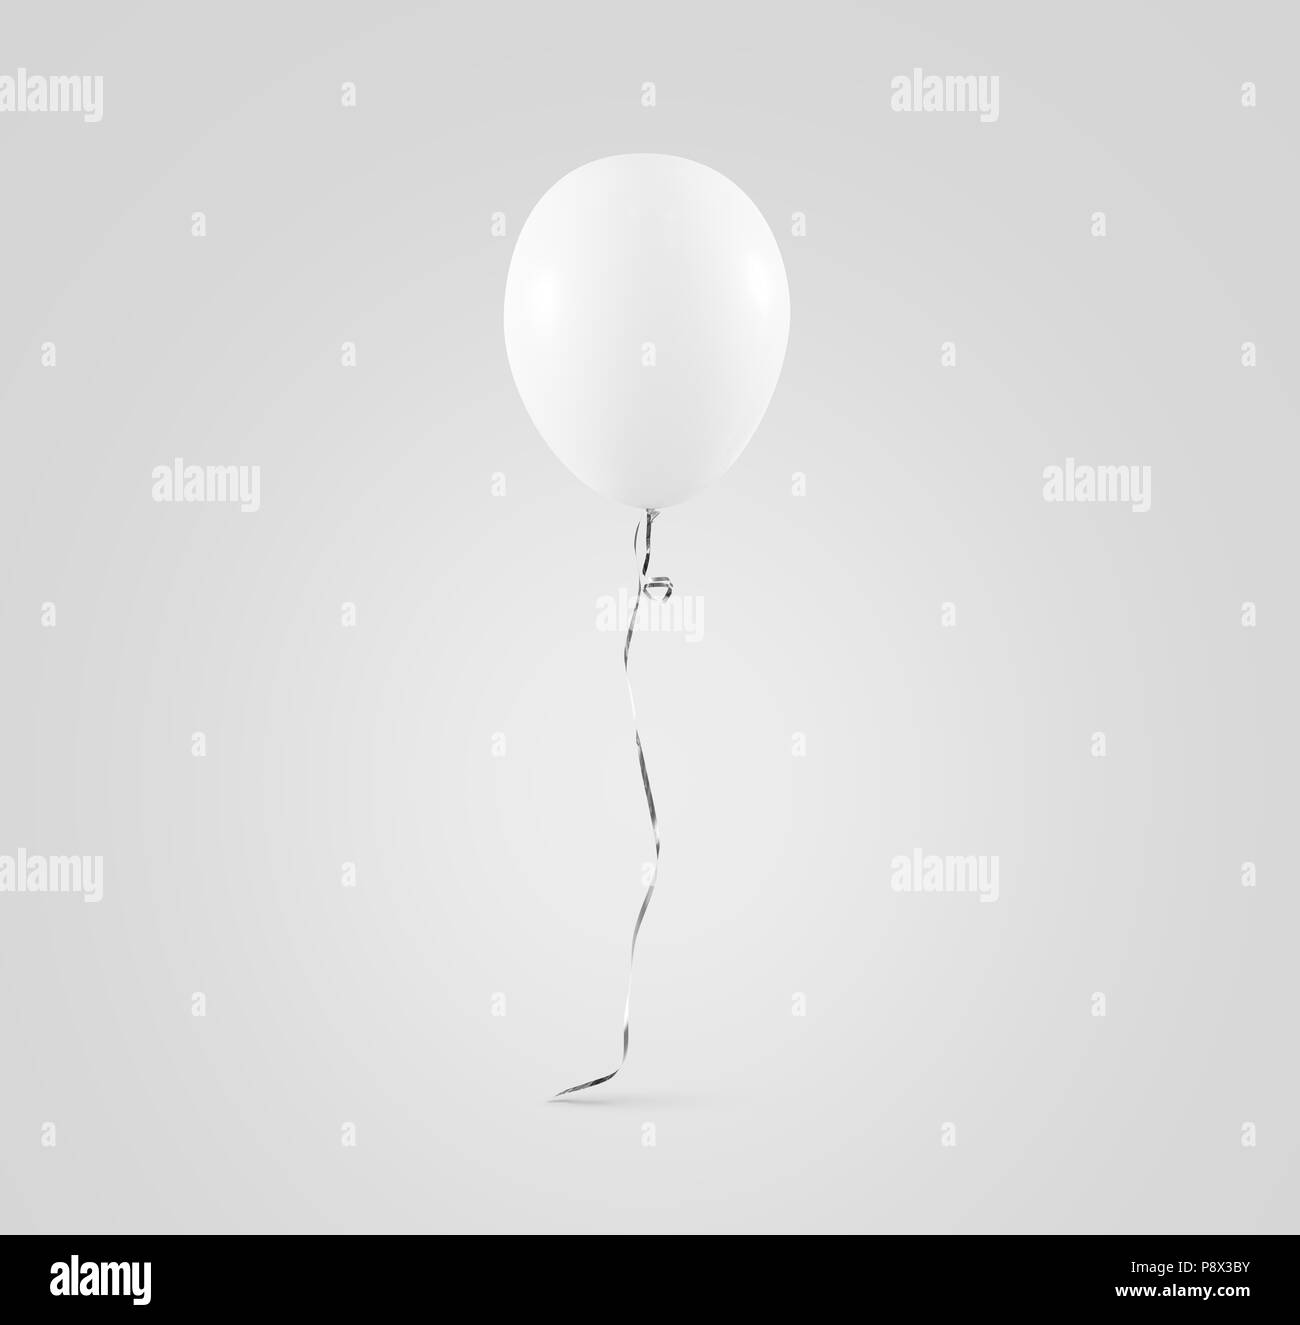 Leere weisse Ballon mock up isoliert. Klar Weiß balloon art design mockup Holding in der Hand. Sauber rein baloon Vorlage. Logo, Textur, Muster presen Stockfoto